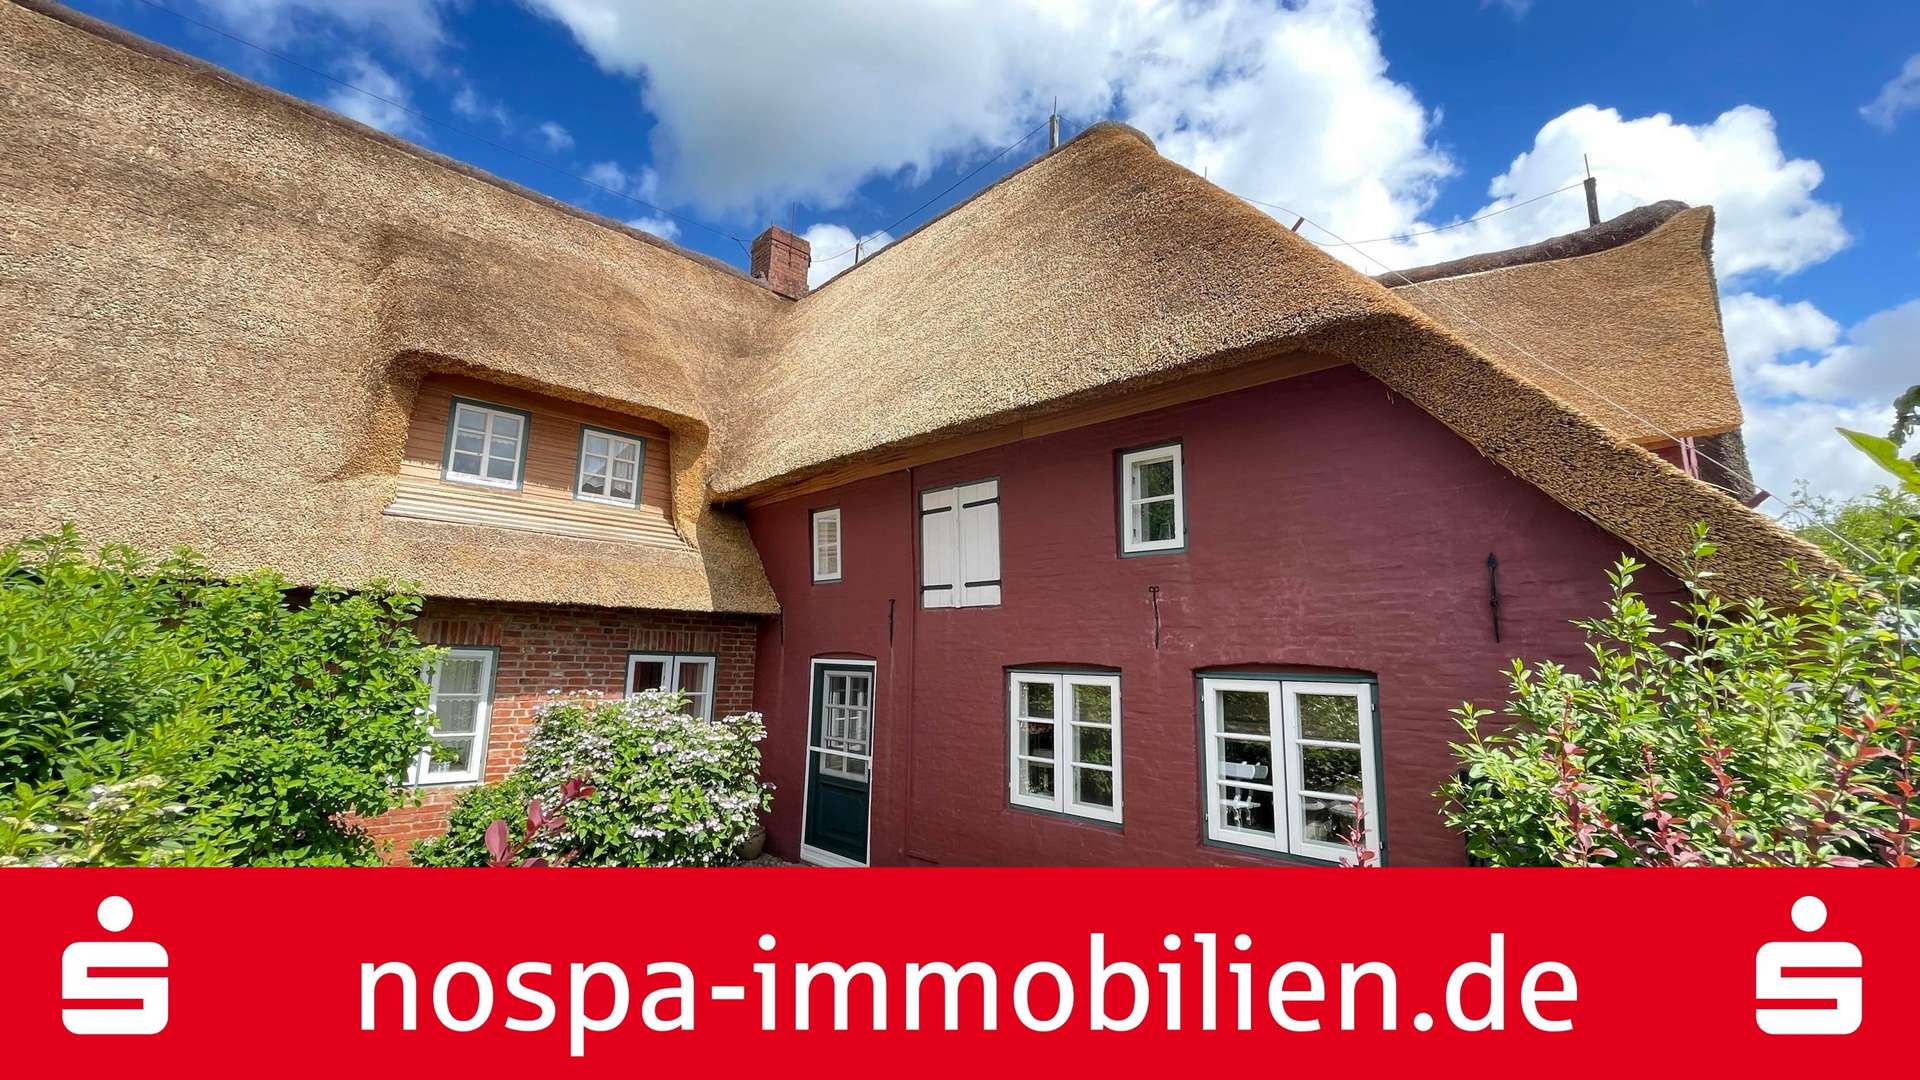 Dachgeschosswohnung in Borgsum - Dachgeschosswohnung in 25938 Borgsum mit 37m² kaufen